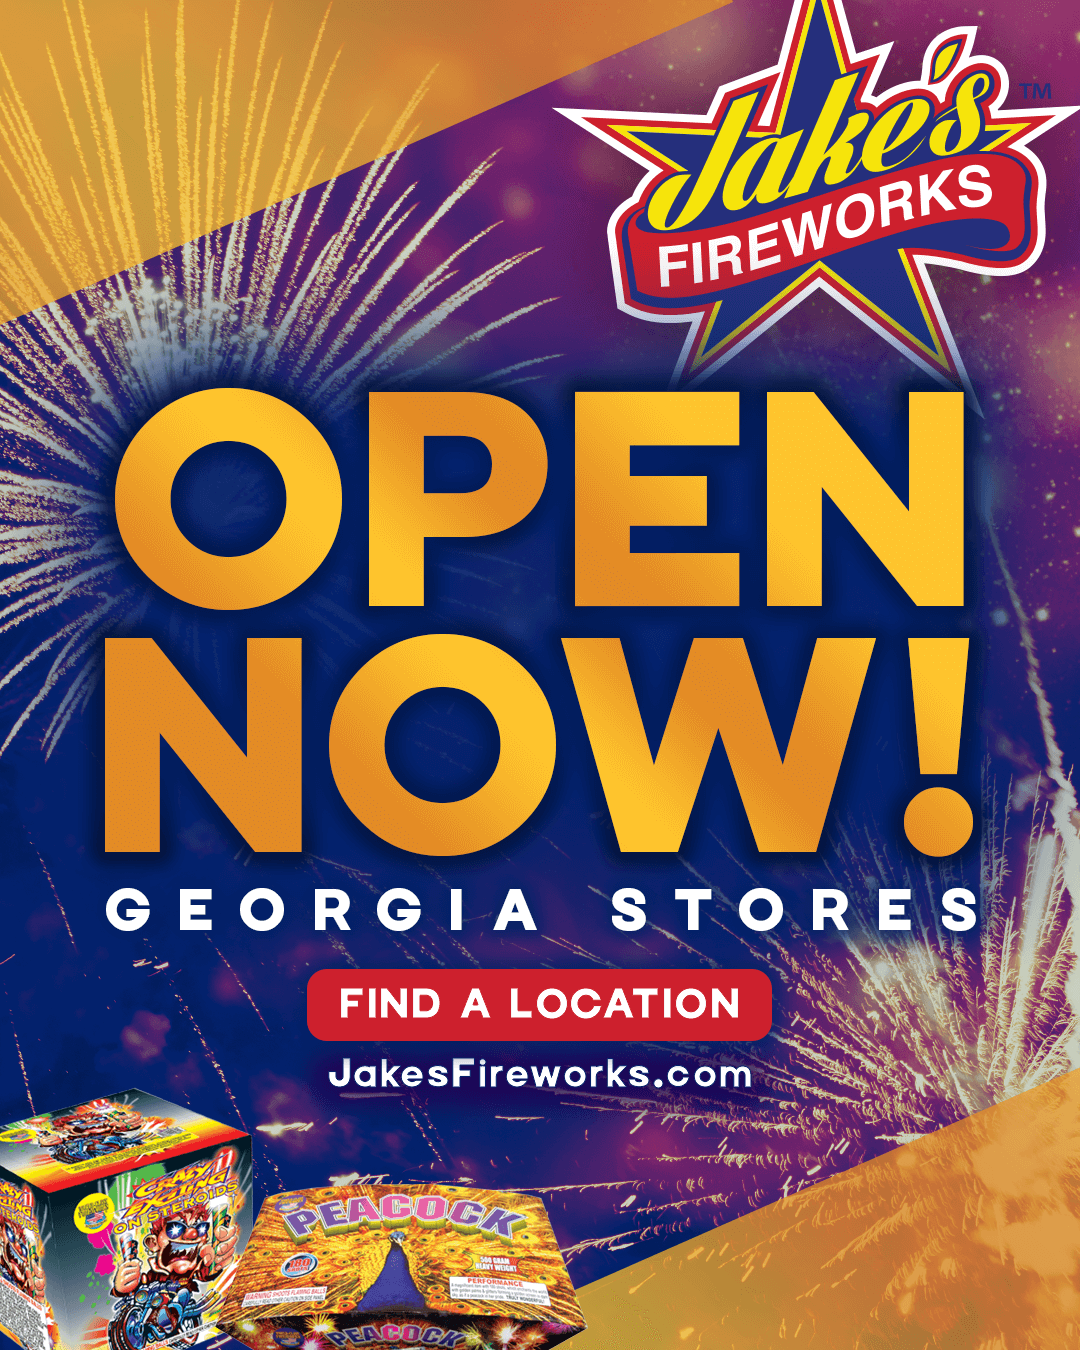 Georgia Stores Now Open Daily Through Jan 1